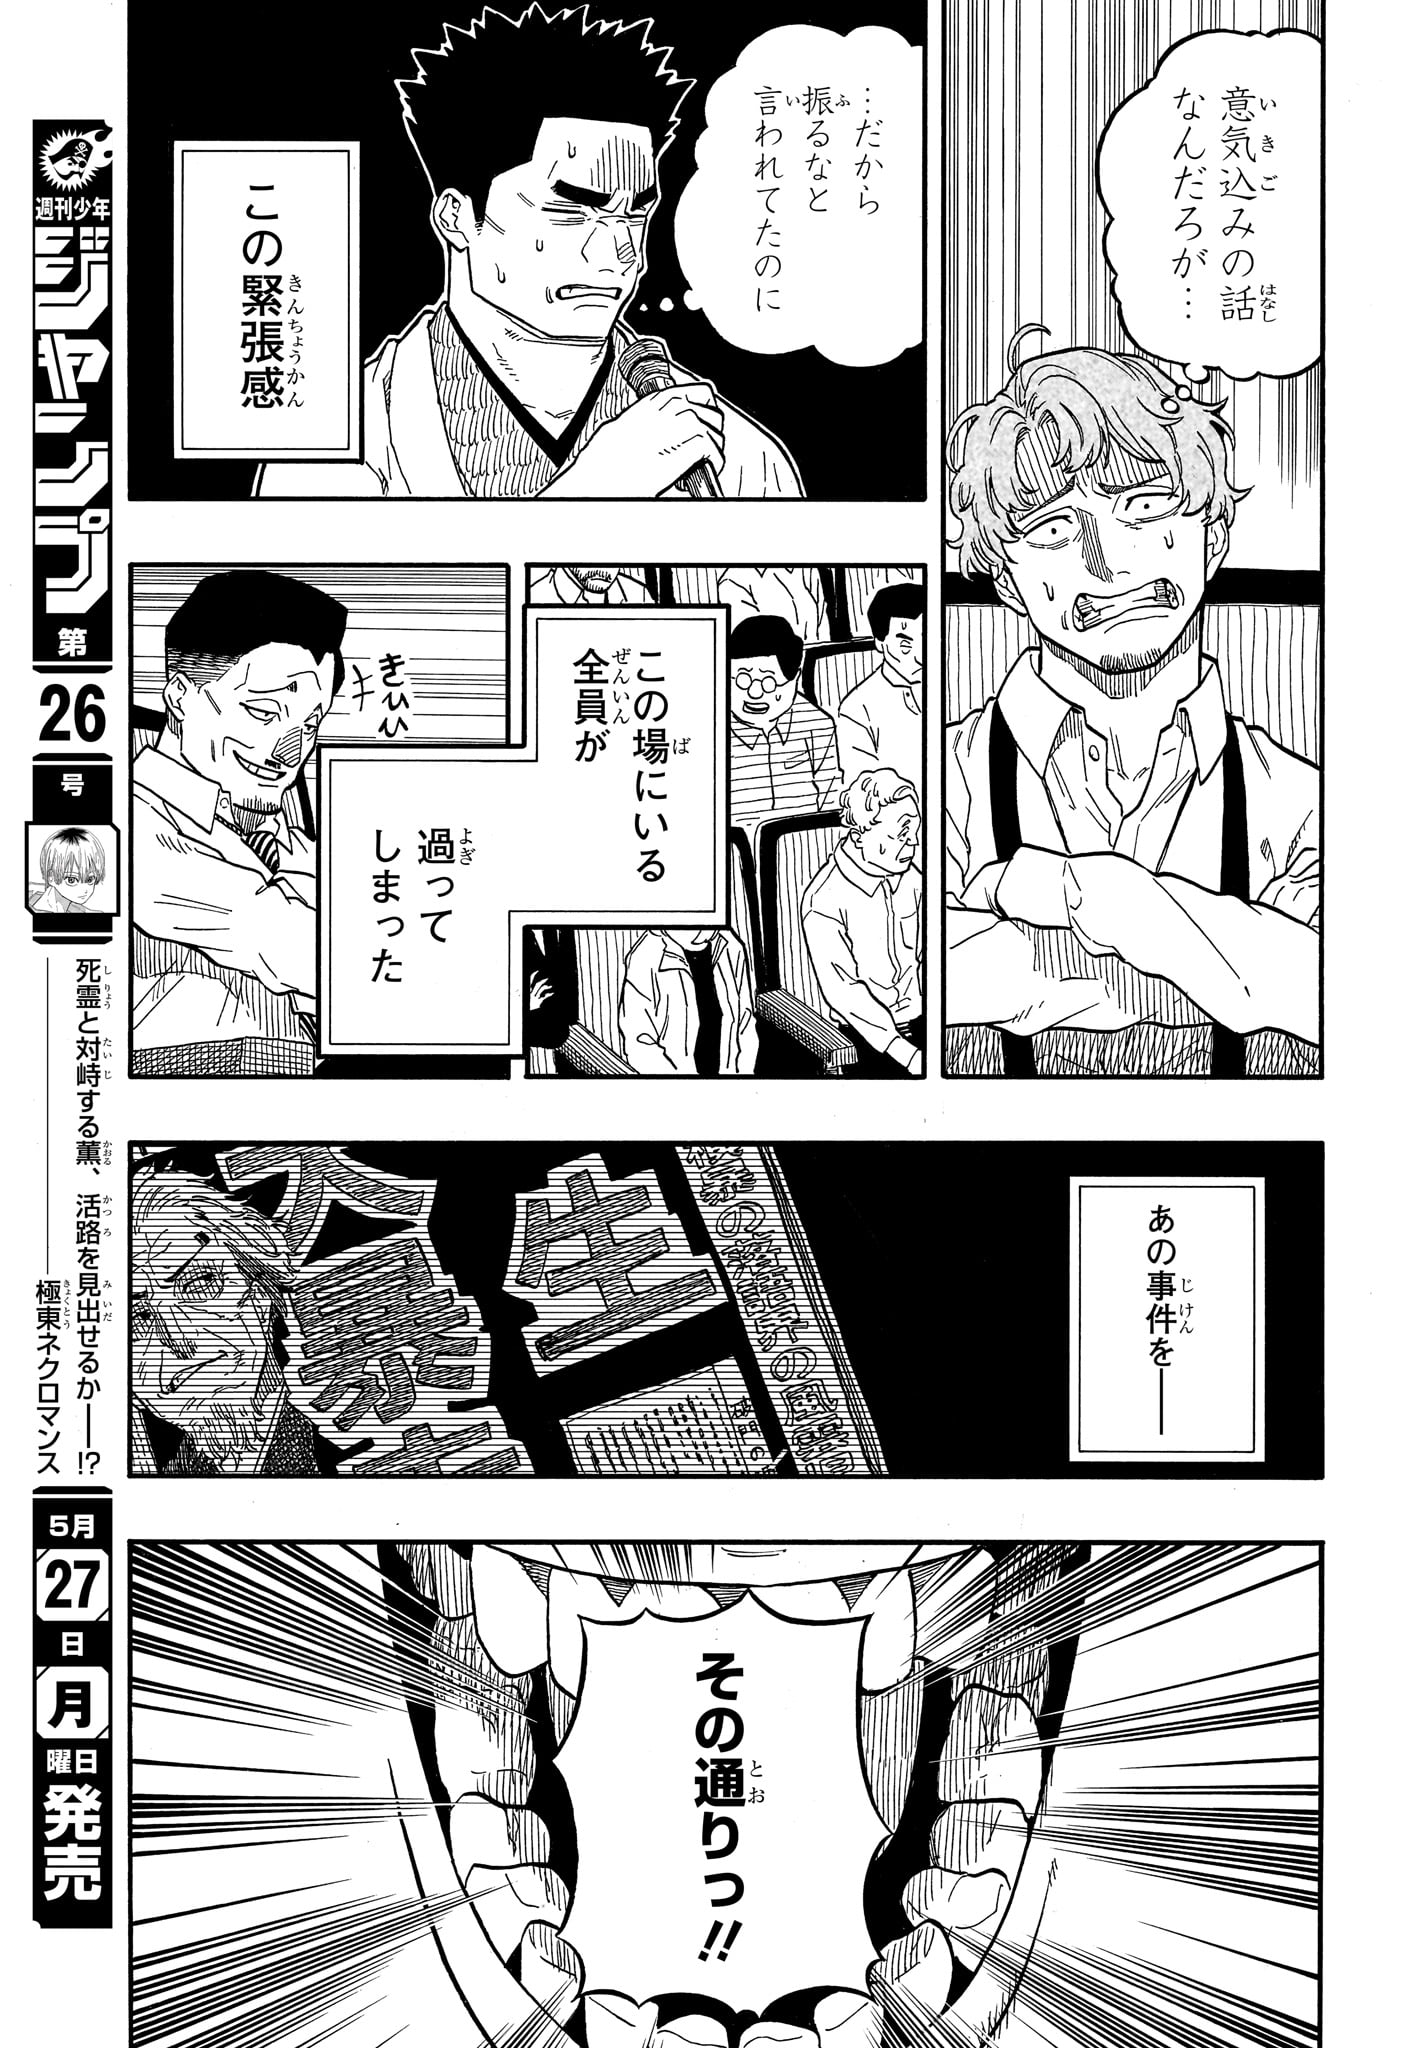 Akane-Banashi - Chapter 110 - Page 9